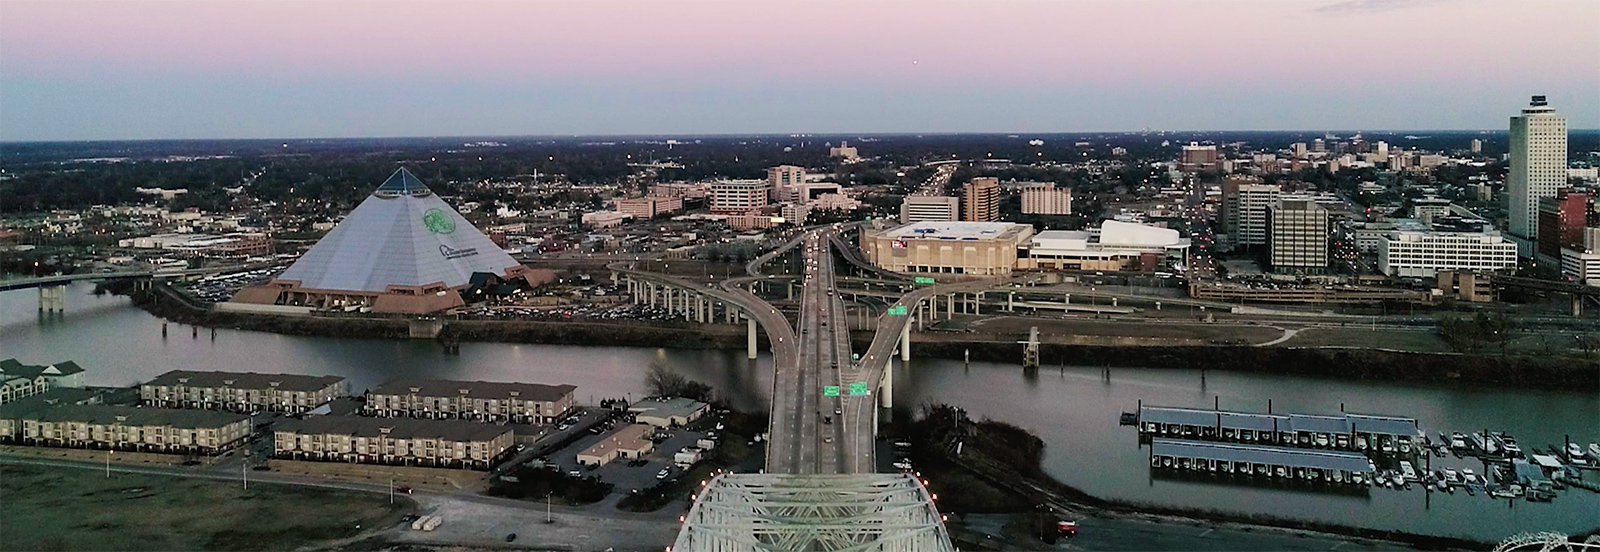 Memphis skyline over Mississippi River 